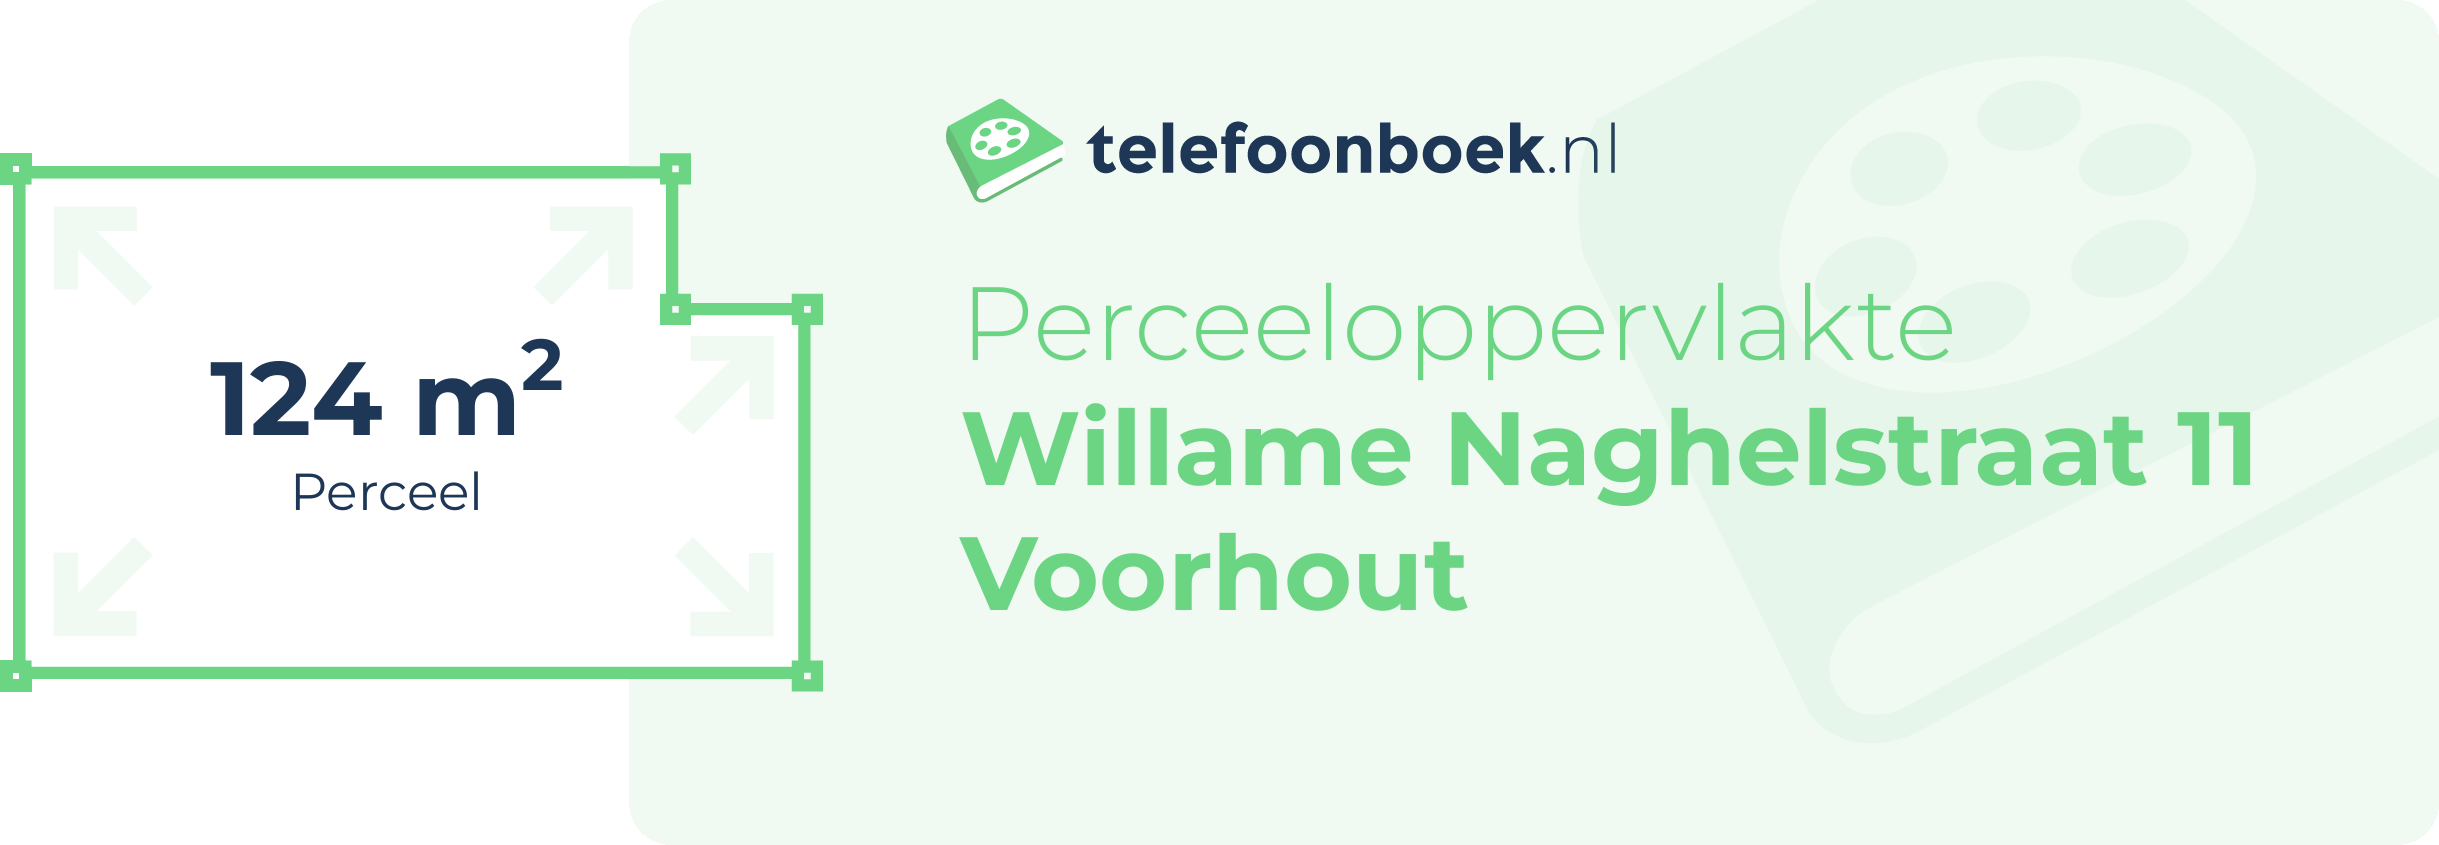 Perceeloppervlakte Willame Naghelstraat 11 Voorhout